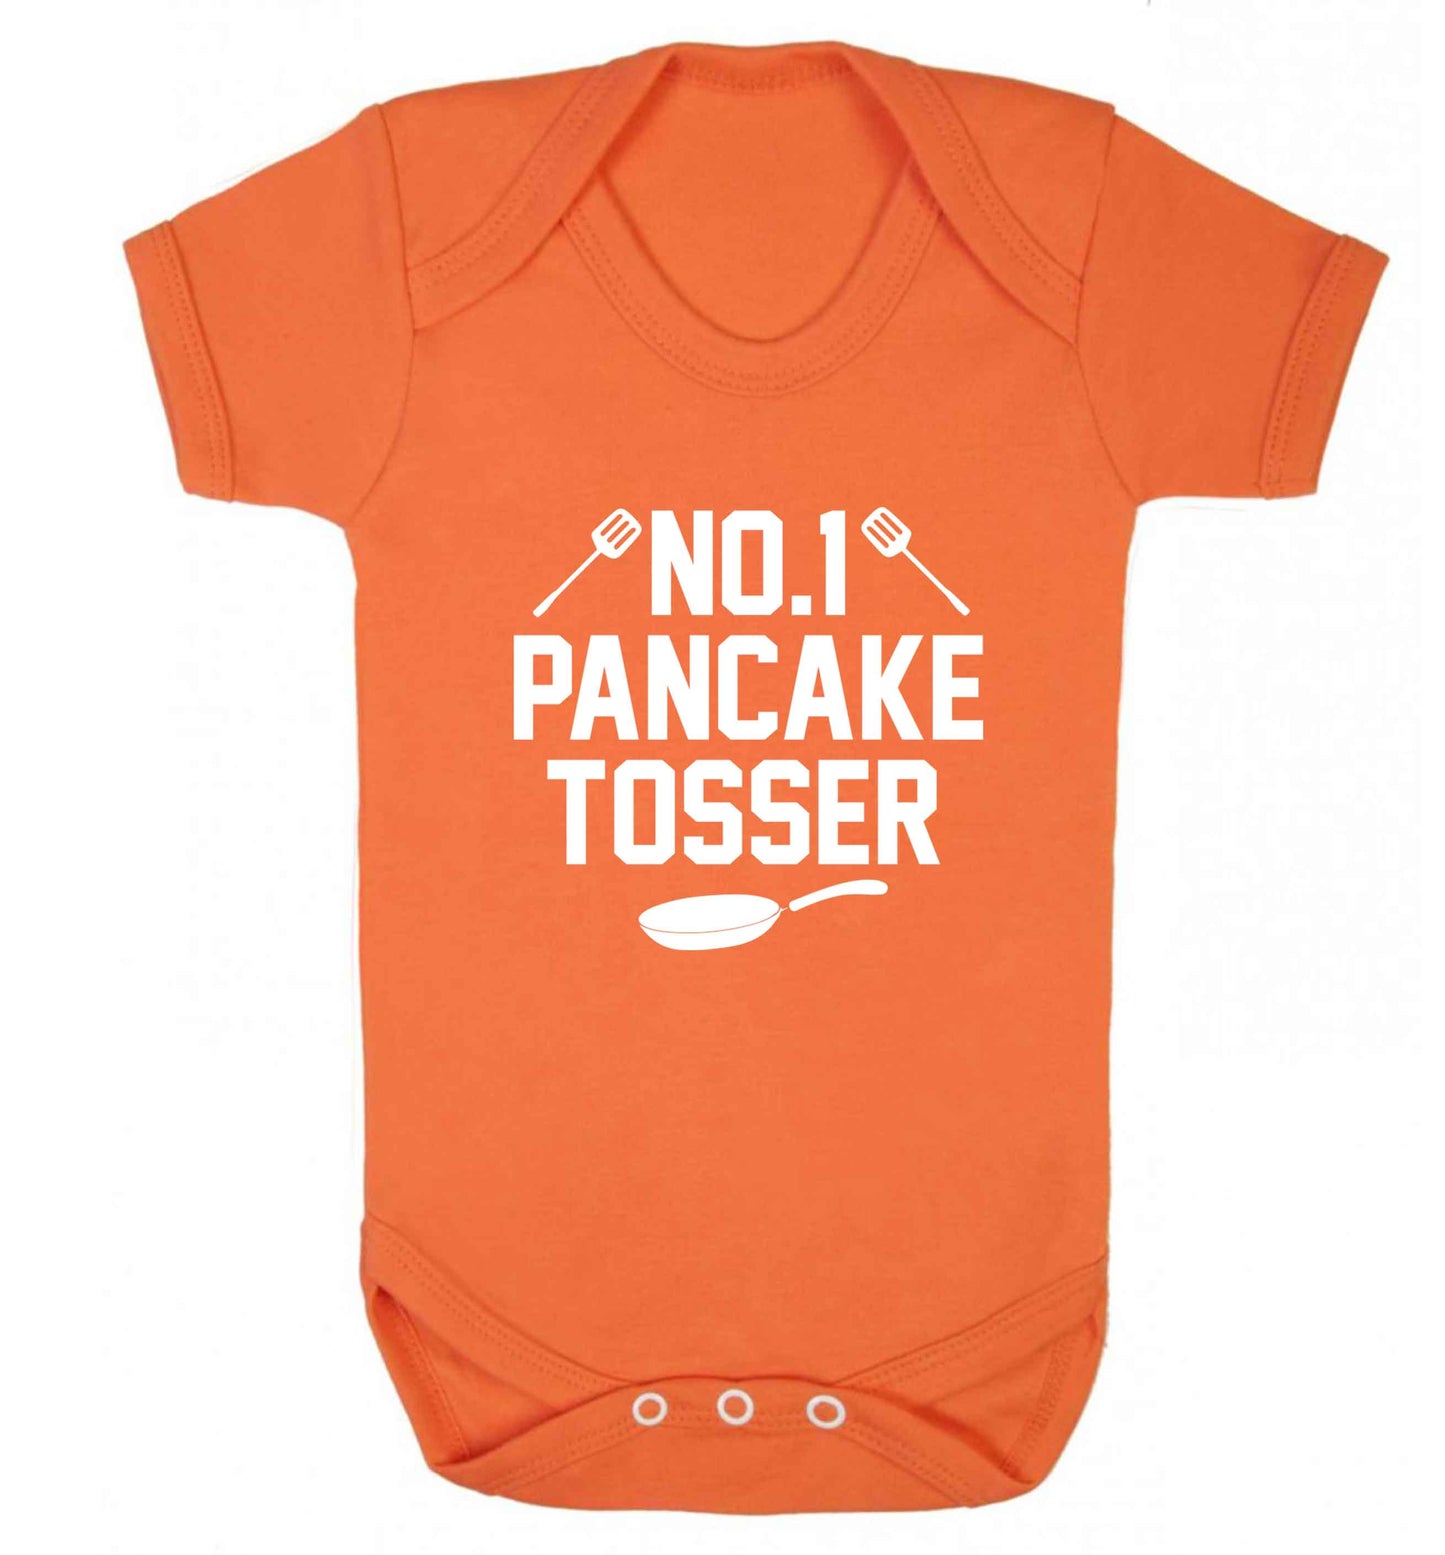 No.1 Pancake tosser baby vest orange 18-24 months